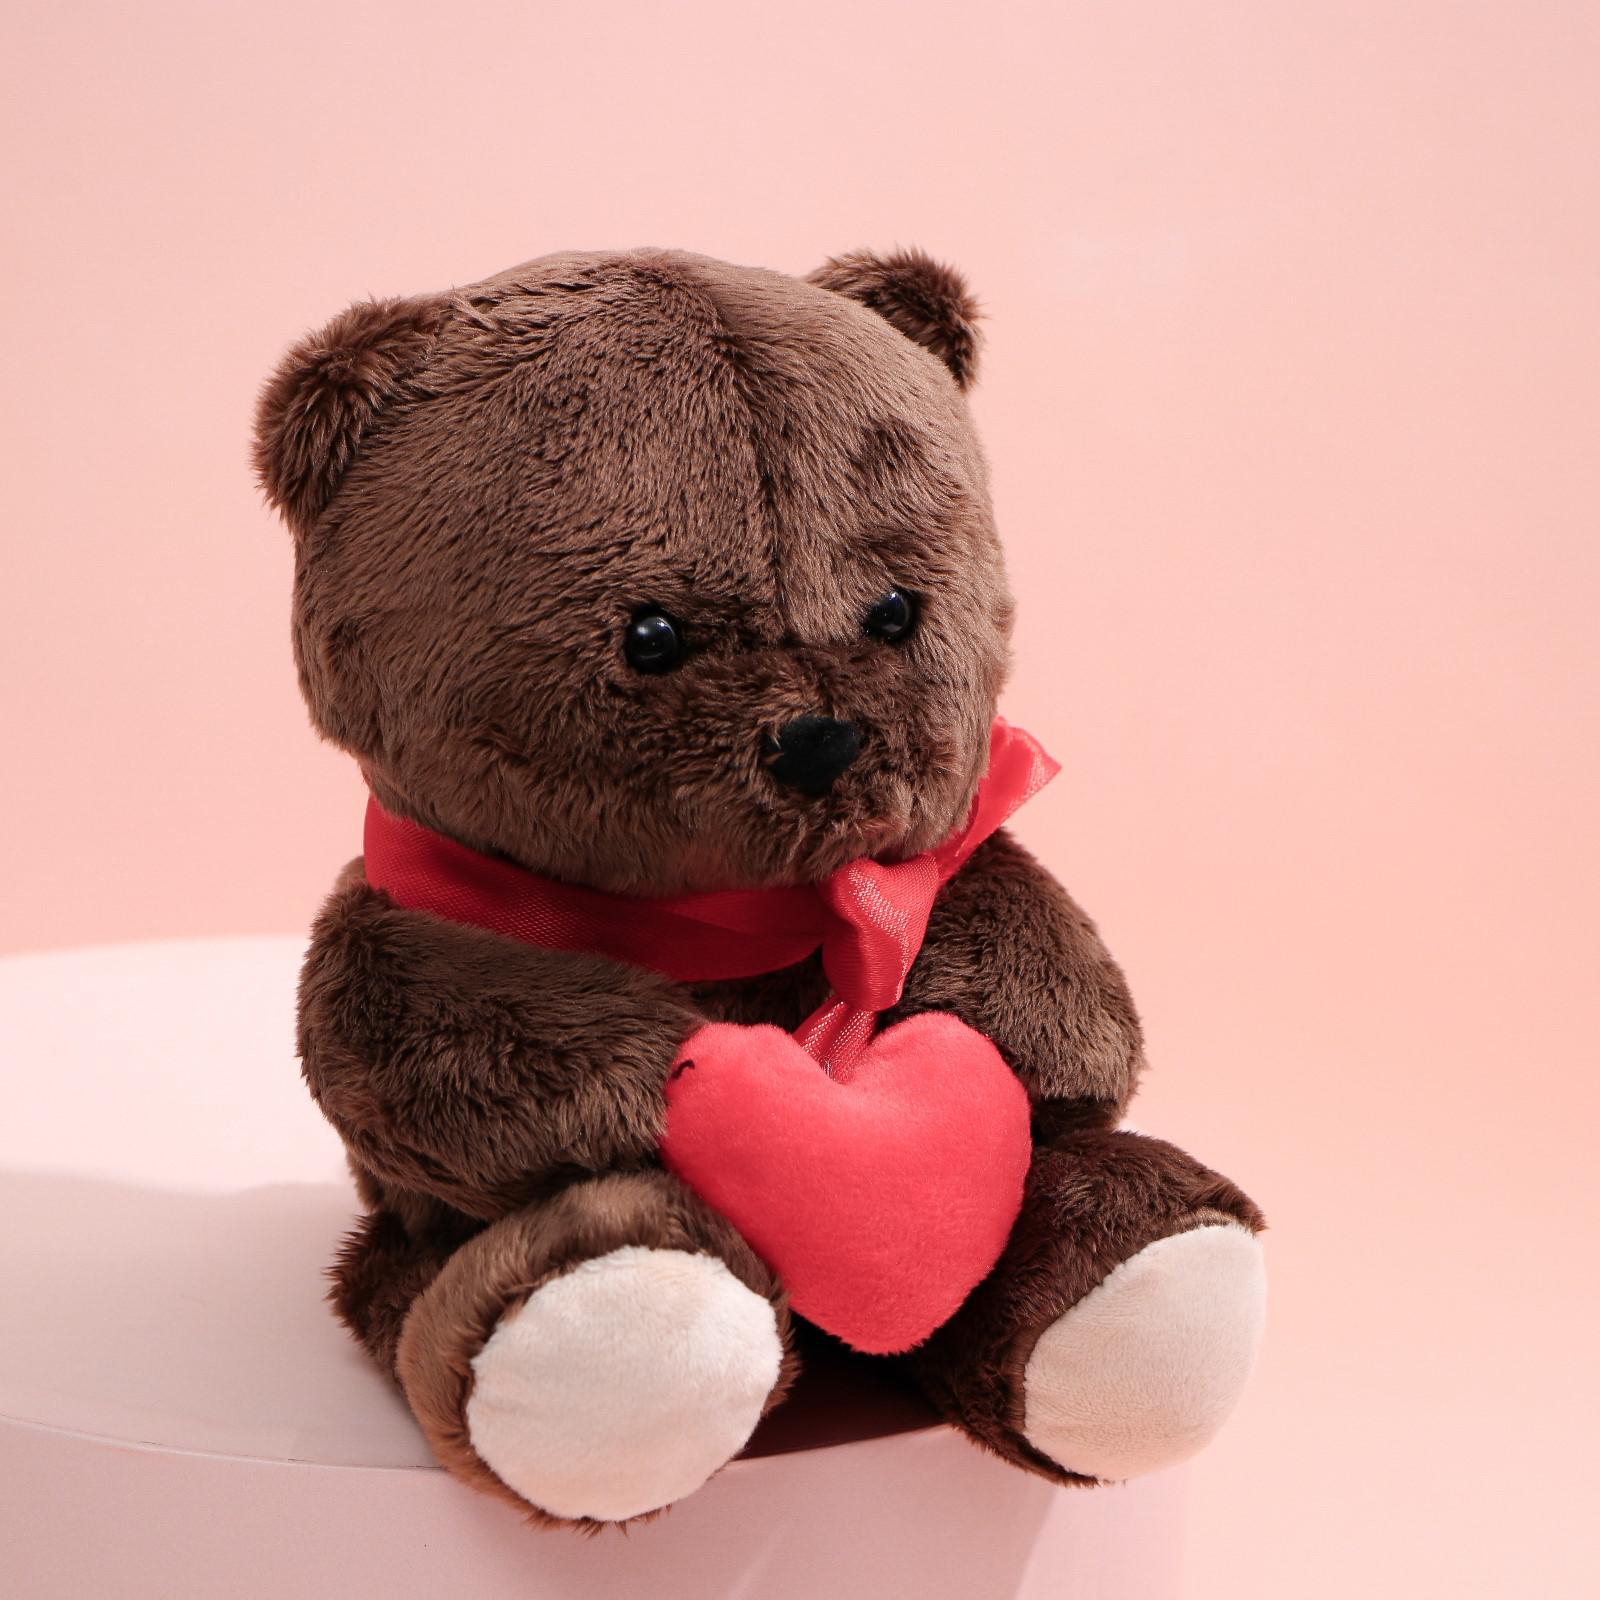 Мягкая игрушка Milo Toys Ted с сердечком мишка 25 см - фото 3